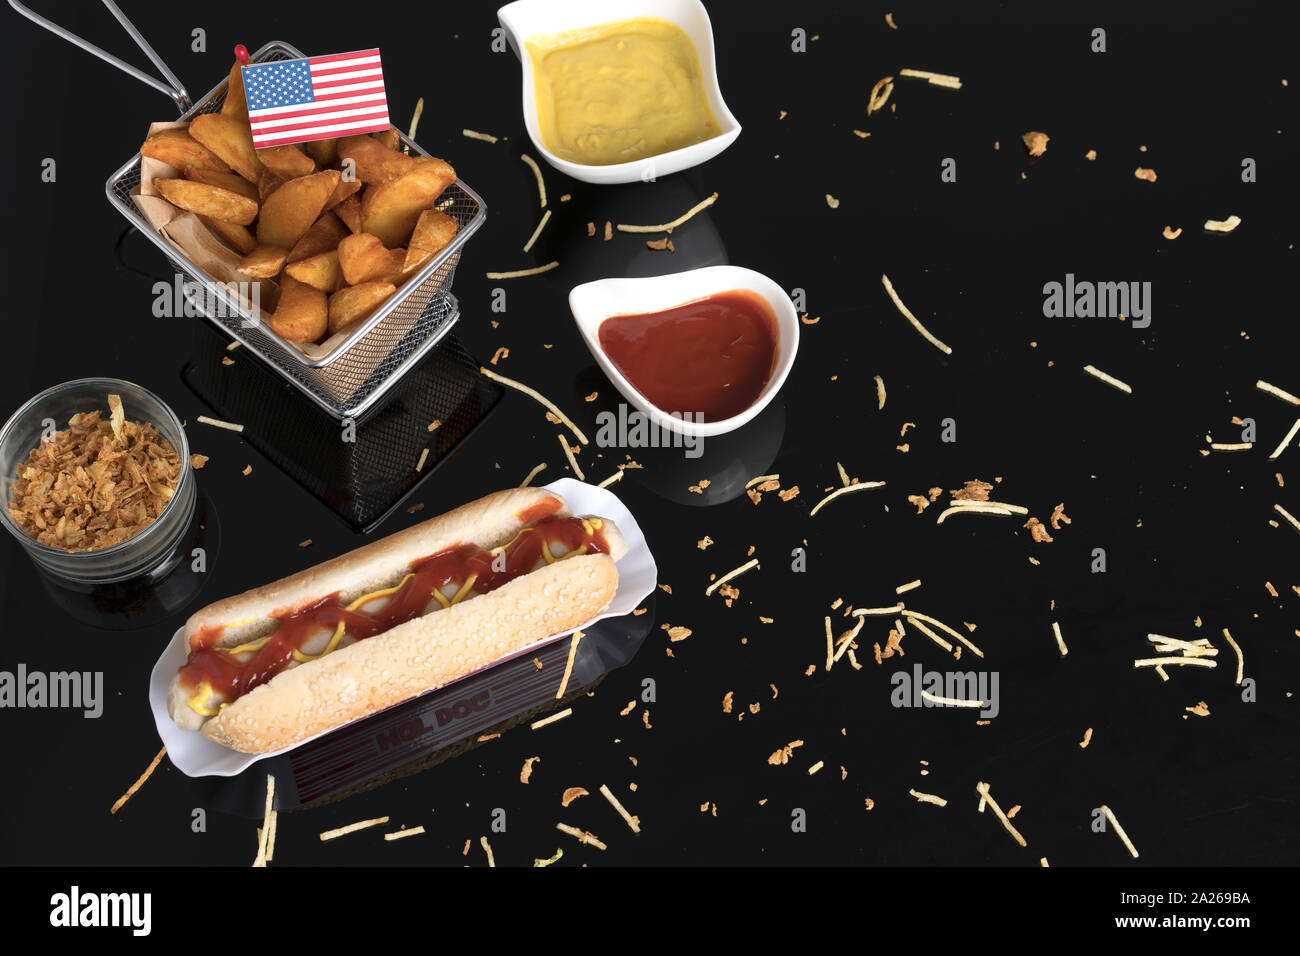 Hot Dog con condimentos, salsas y patatas visto desde arriba con la bandera de EE.UU. Foto de stock